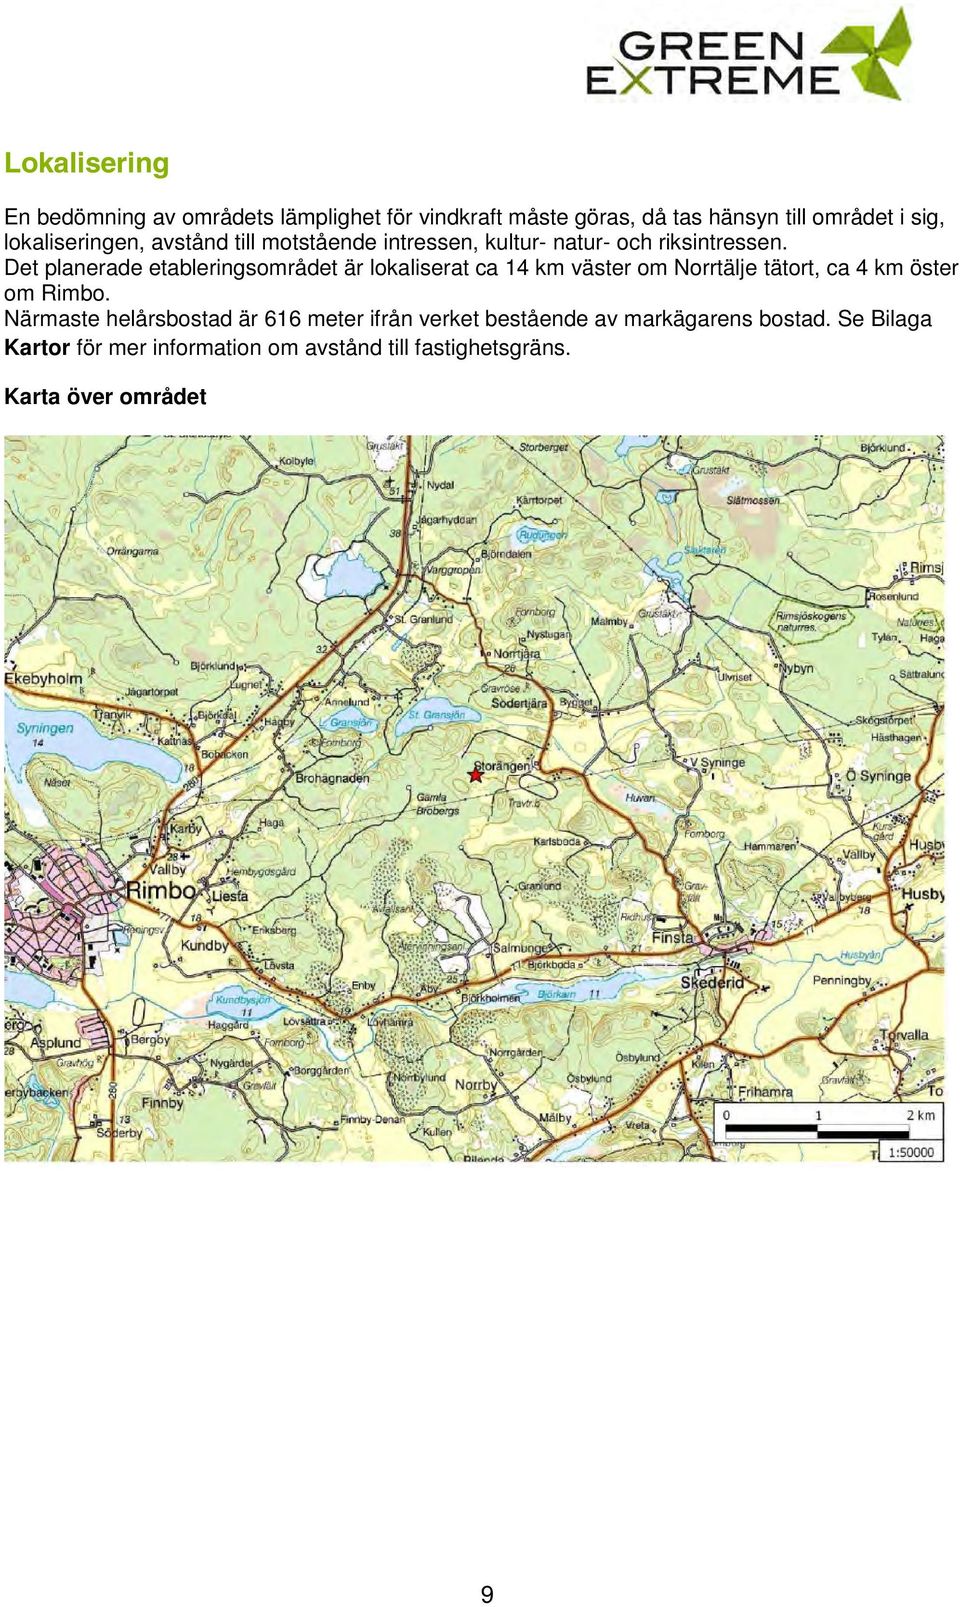 Det planerade etableringsområdet är lokaliserat ca 14 km väster om Norrtälje tätort, ca 4 km öster om Rimbo.